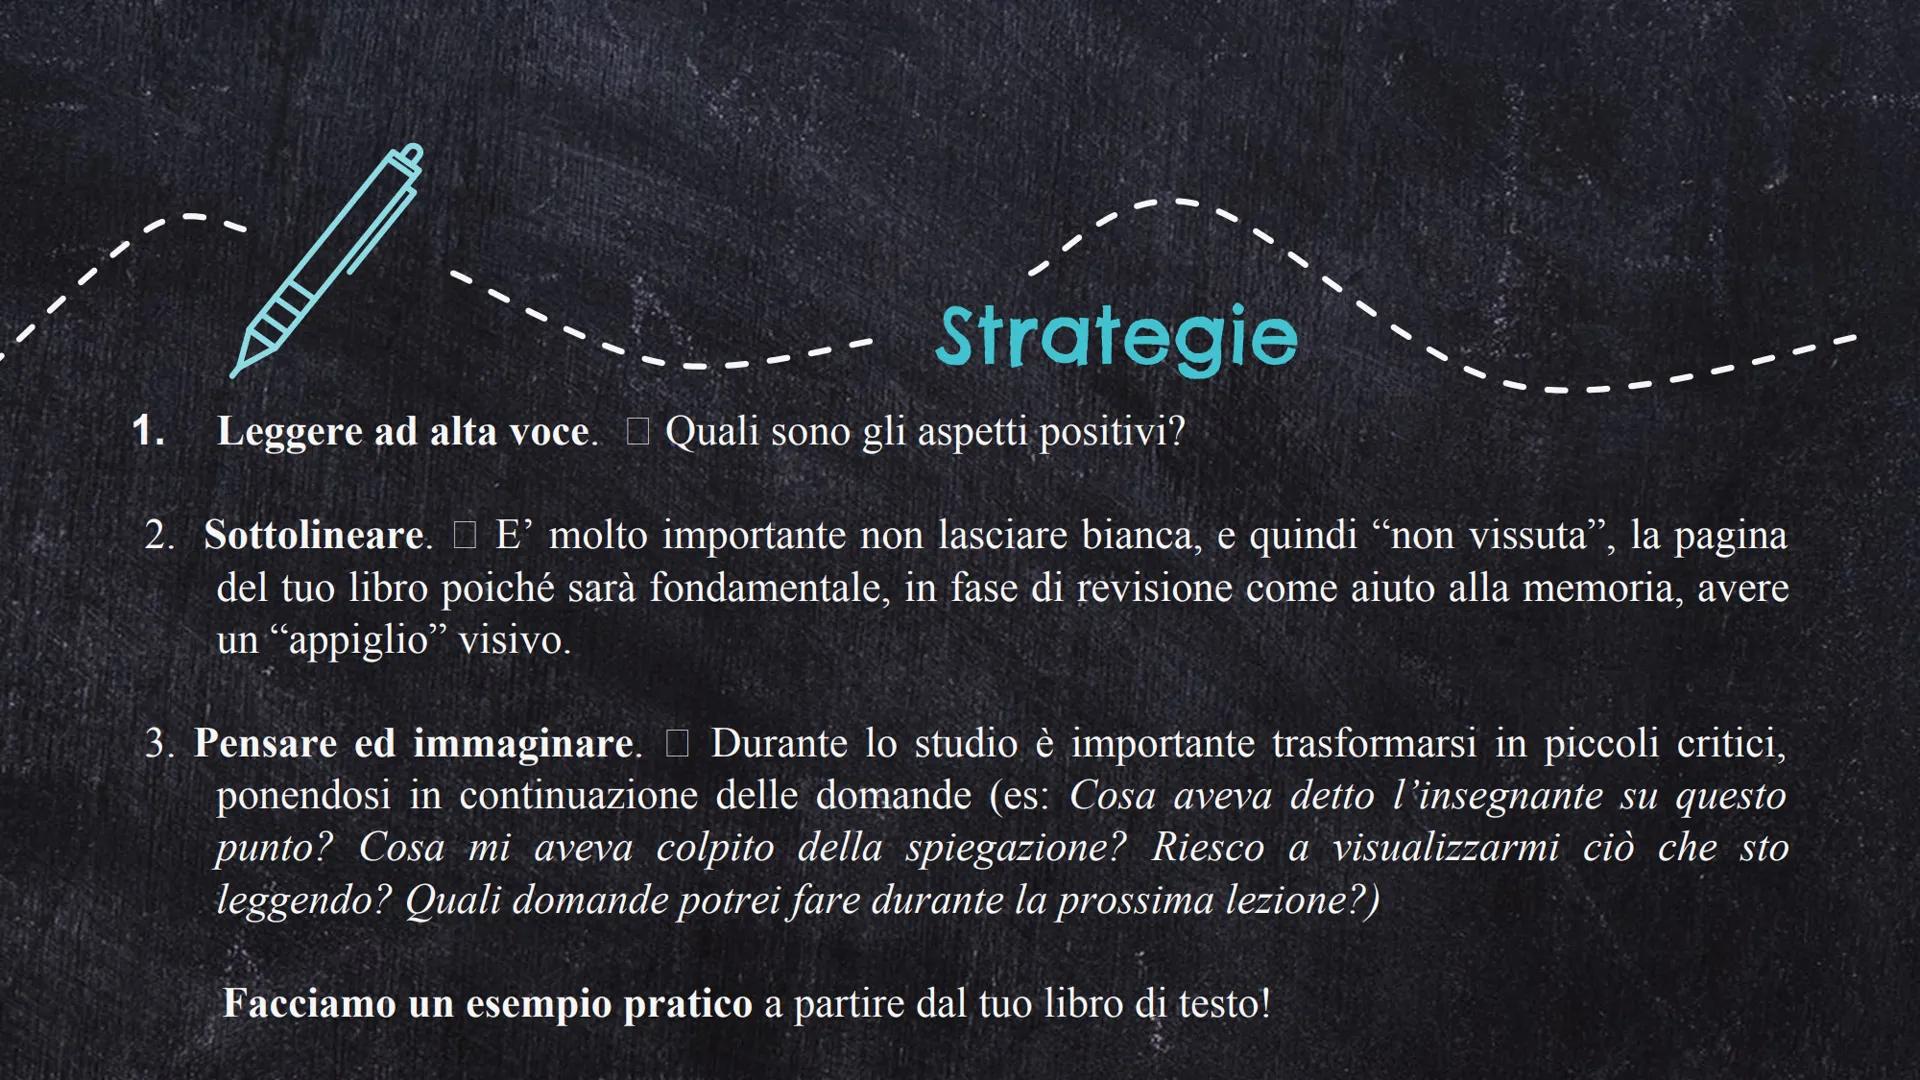 ☆
26
Lezioni di metodo
di studio
A.S. 2022/23
Prof.ssa Chiara Bassanelli
A
** Cos'è il metodo di studio?
È la strada per organizzare in
modo